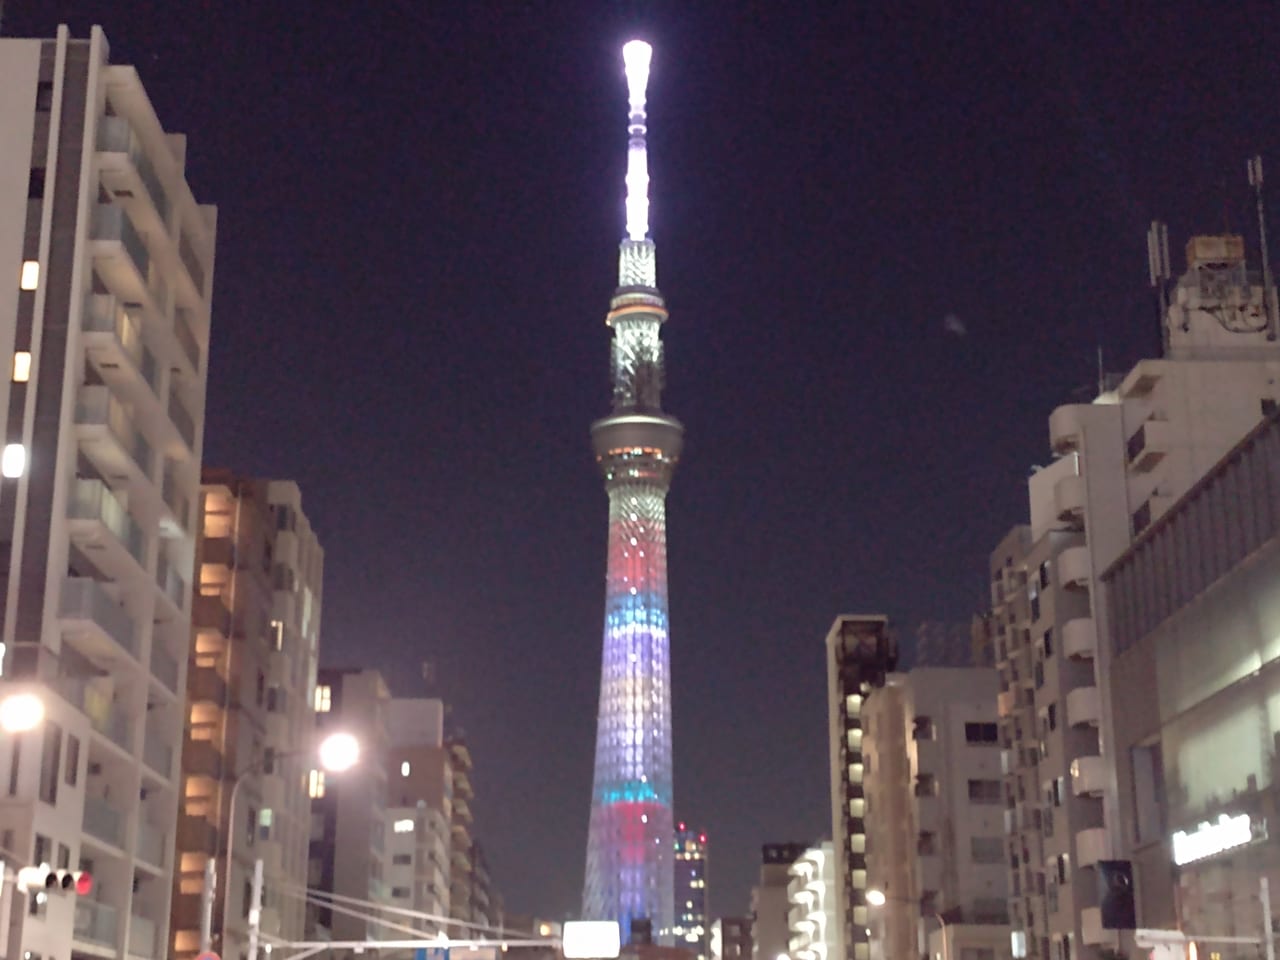 墨田区 今日8 16夜から 東京スカイツリー 10周年を記念して これまで点灯したライティングの中から 23種類のライティングをリバイバル点灯します 号外net 墨田区